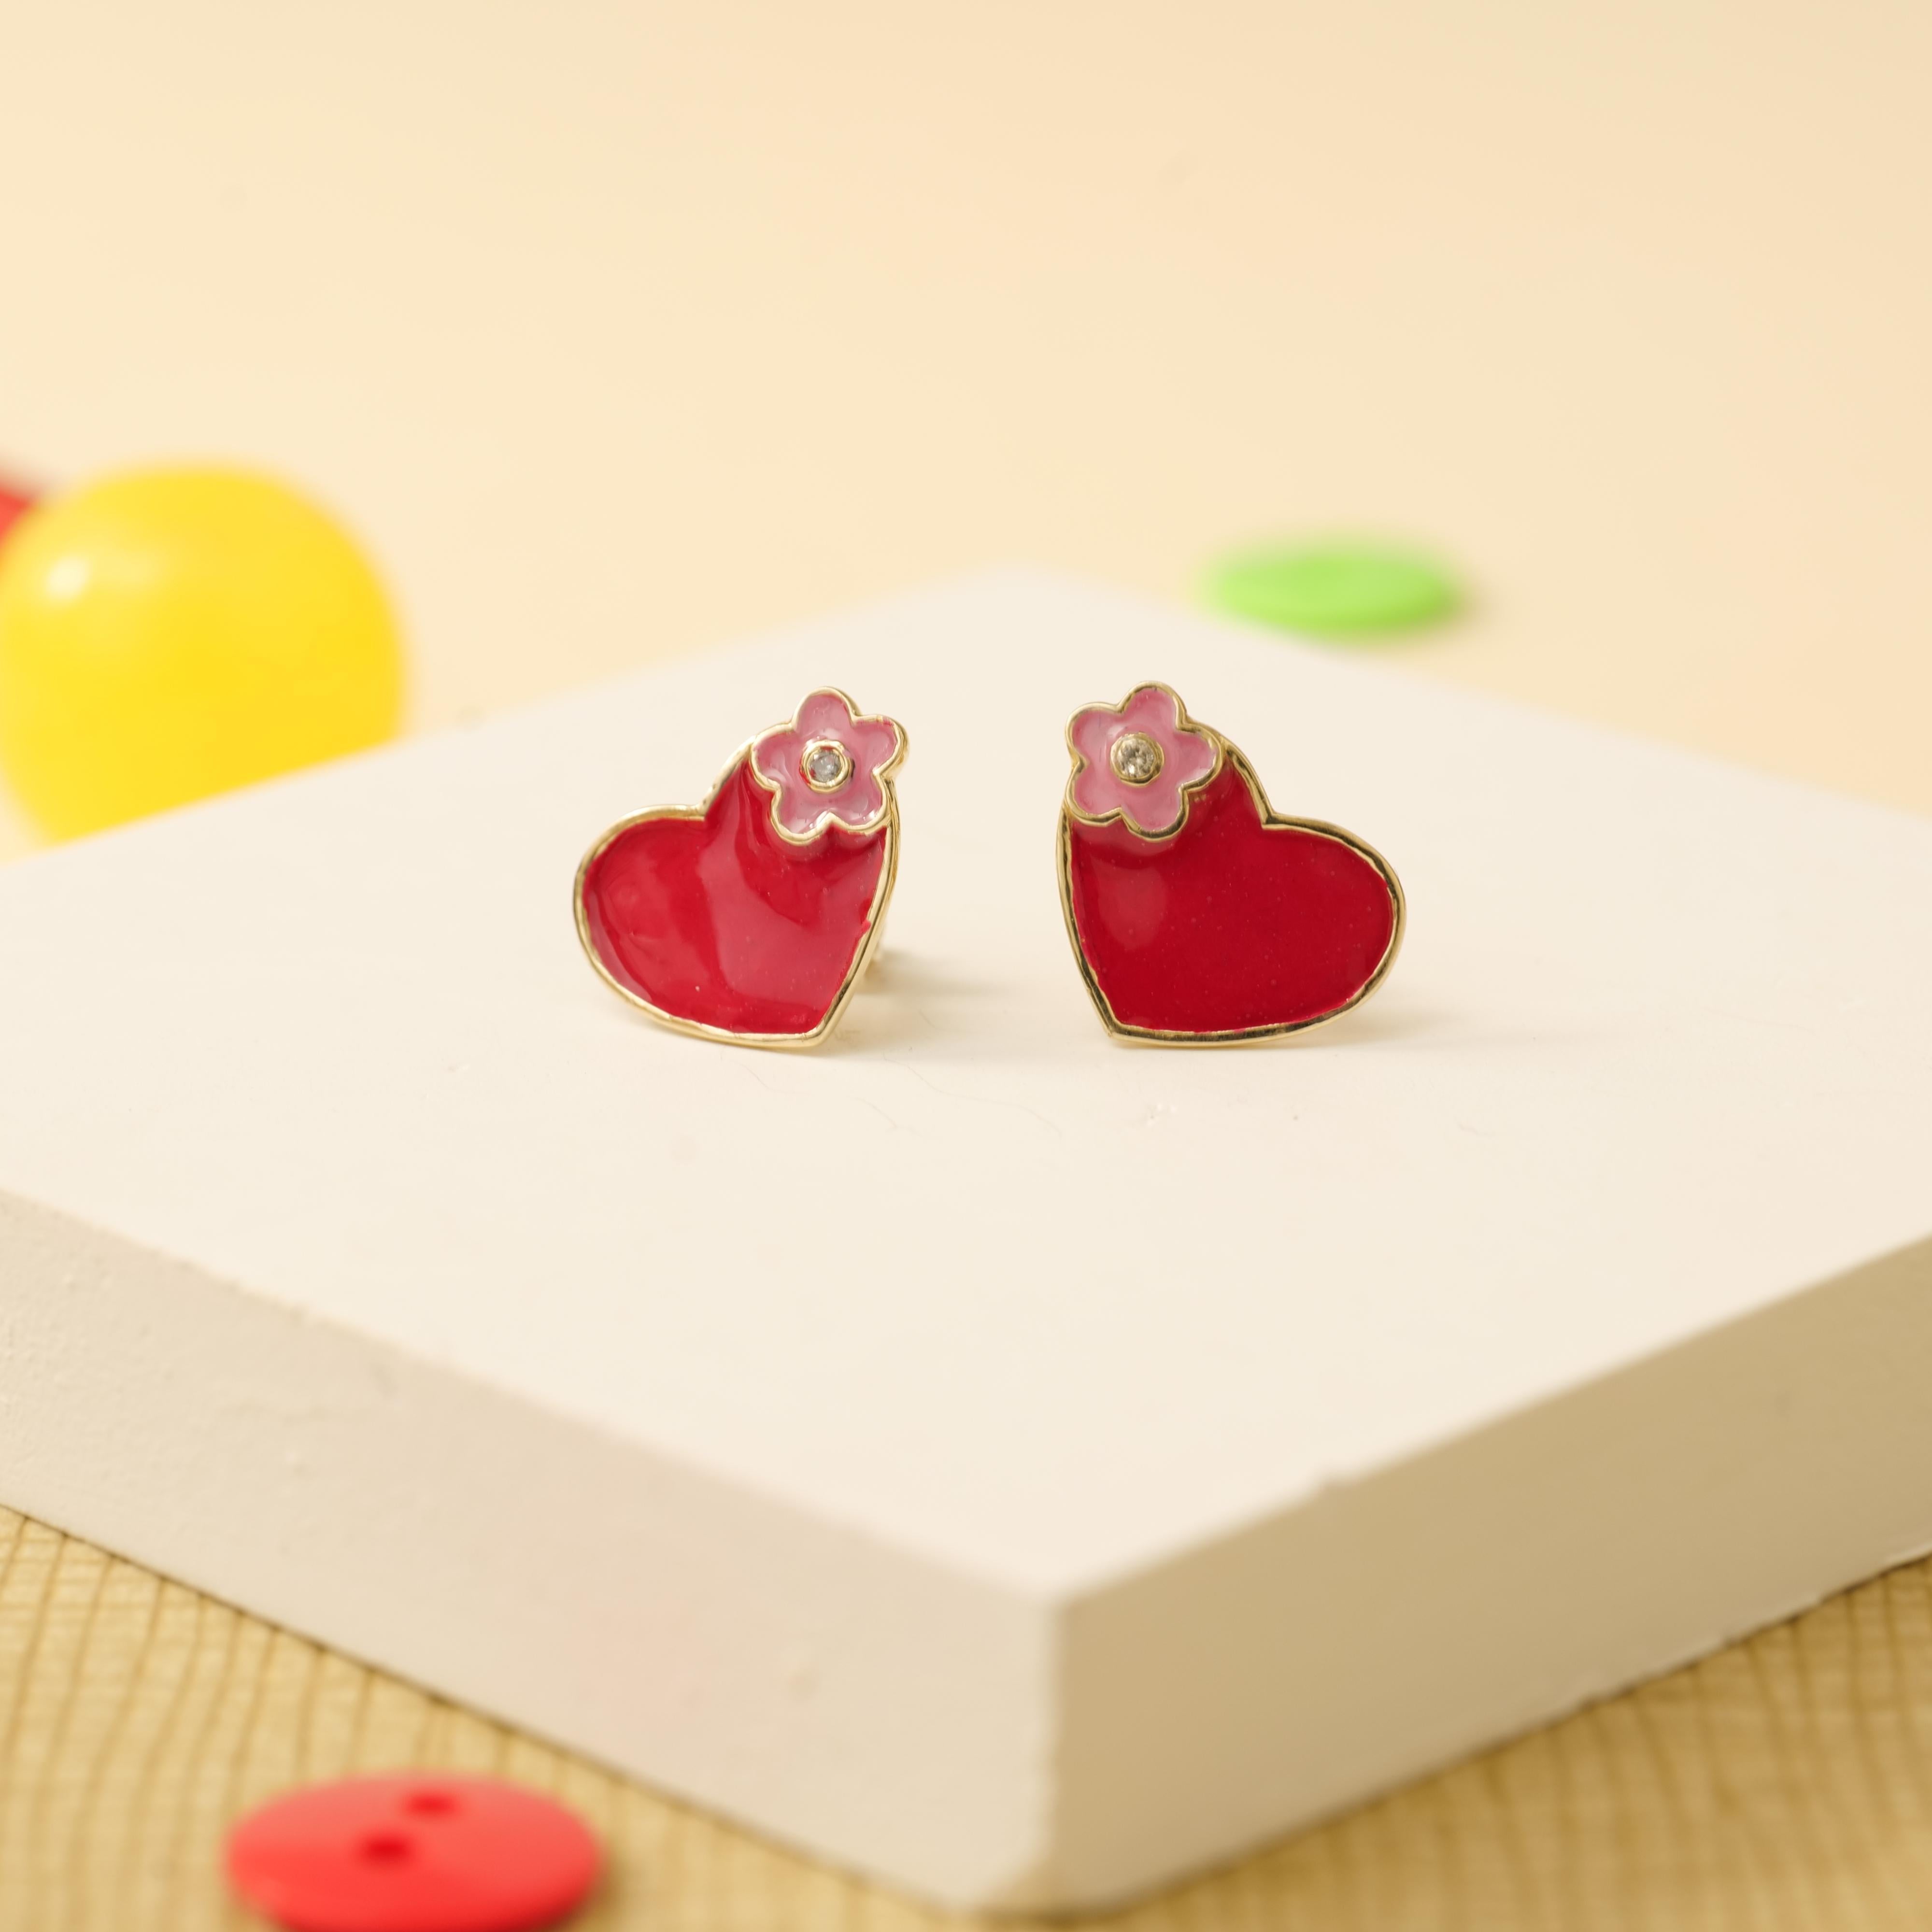 Emaillierte Herz-Diamant-Ohrringe für Mädchen, Kinder und Kleinkinder aus massivem 18-karätigem Gold vereinen Raffinesse mit skurrilem Charme. Die fachmännisch gefertigten Ohrringe in Herzform sind mit zarten Blumenmotiven aus Emaille verziert, die